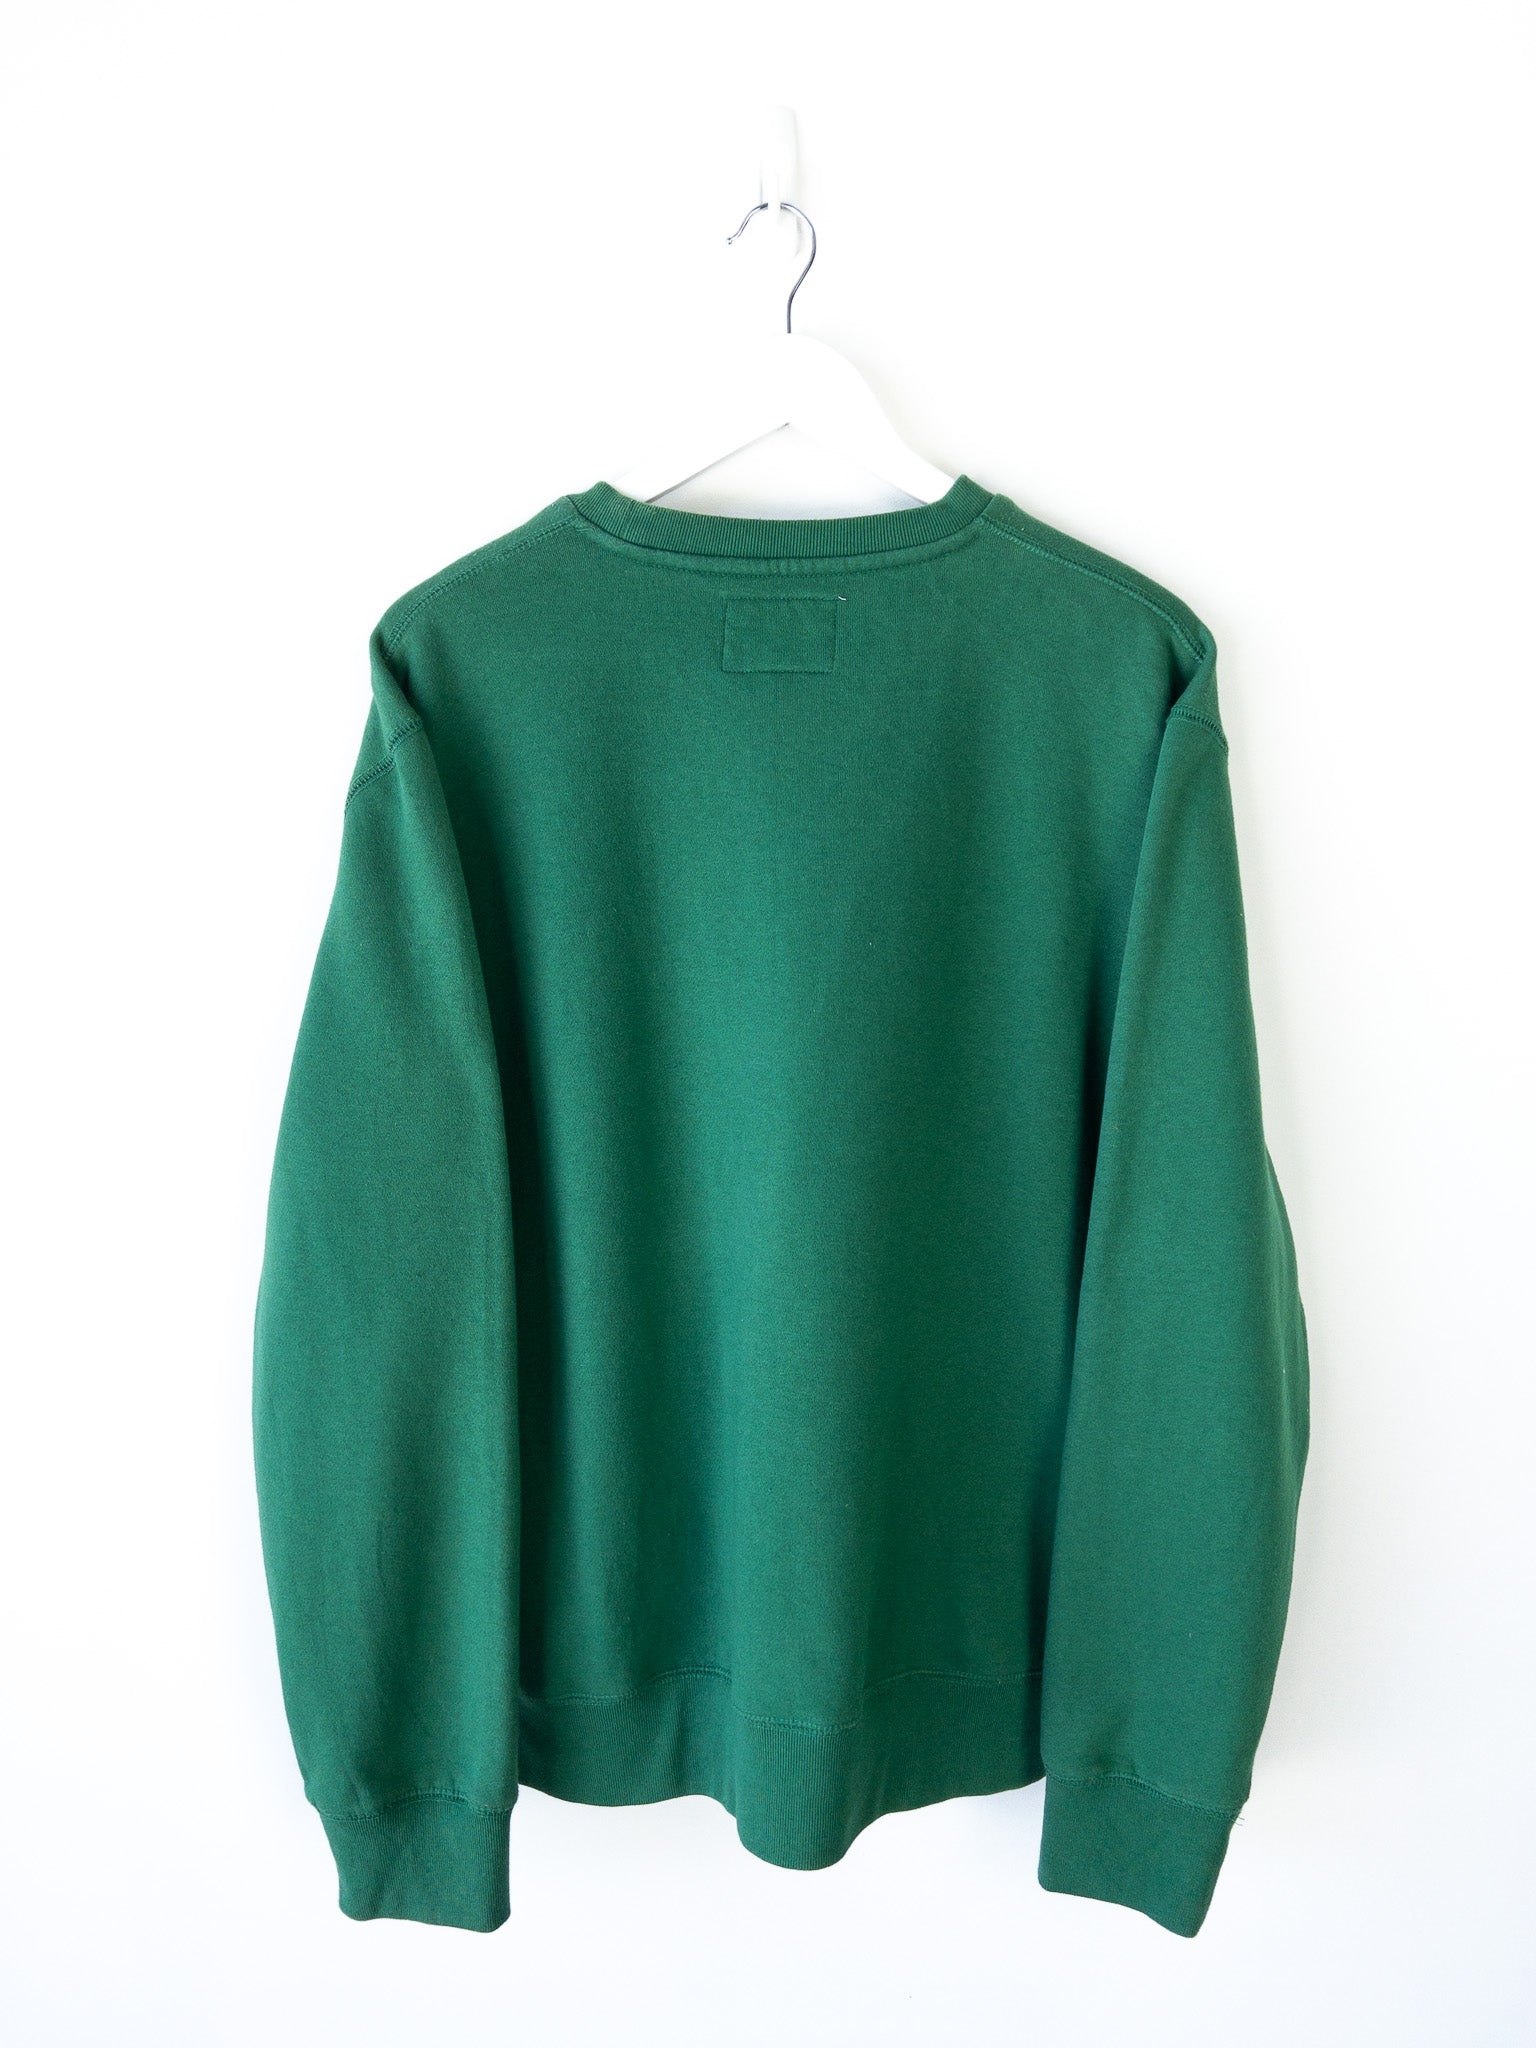 Vintage Eckō Sweatshirt (XL)